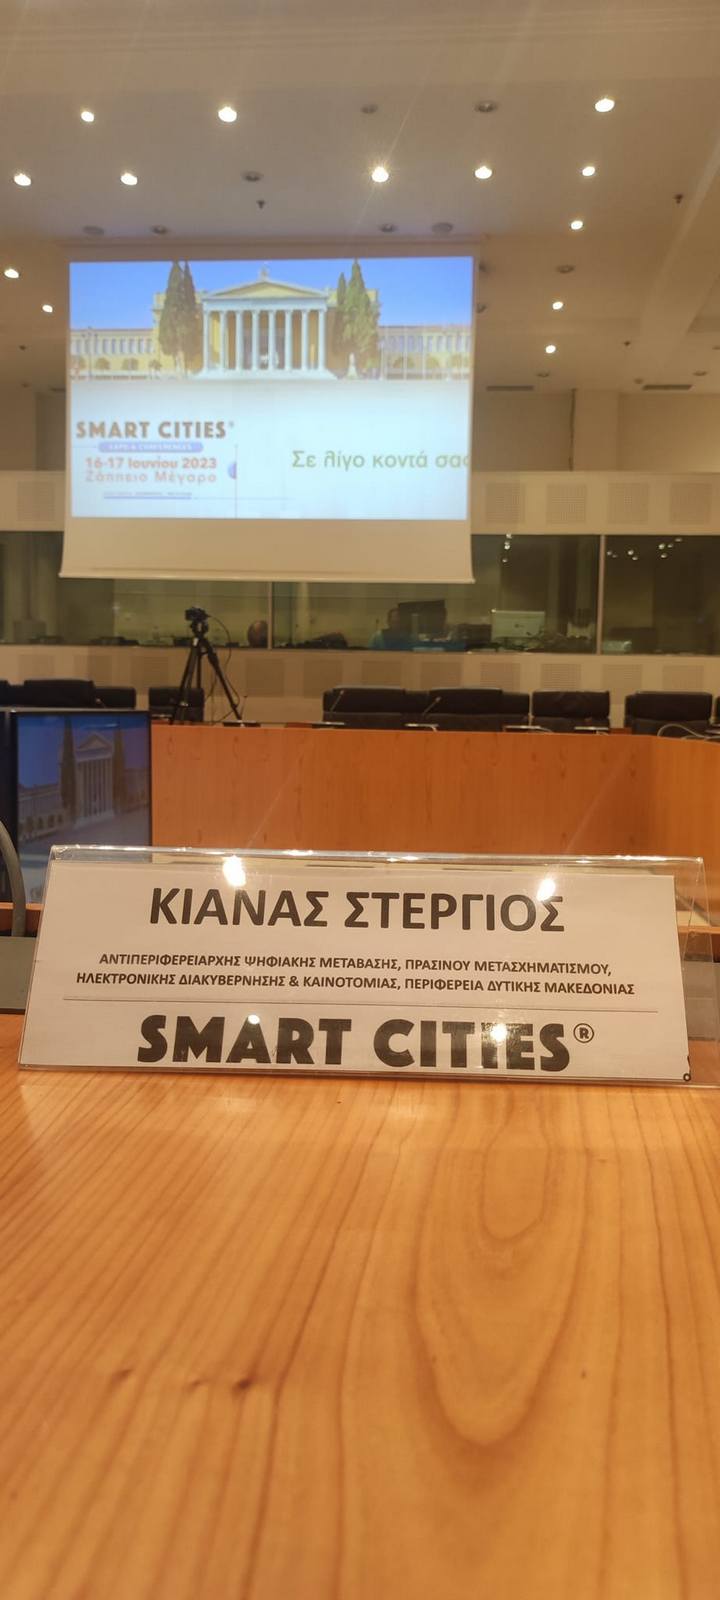 Βράβευση για τις δράσεις της κυκλικής οικονομίας και της ψηφιακής μετάβασης στην 1η Έκθεση «Smart Cities 2023»